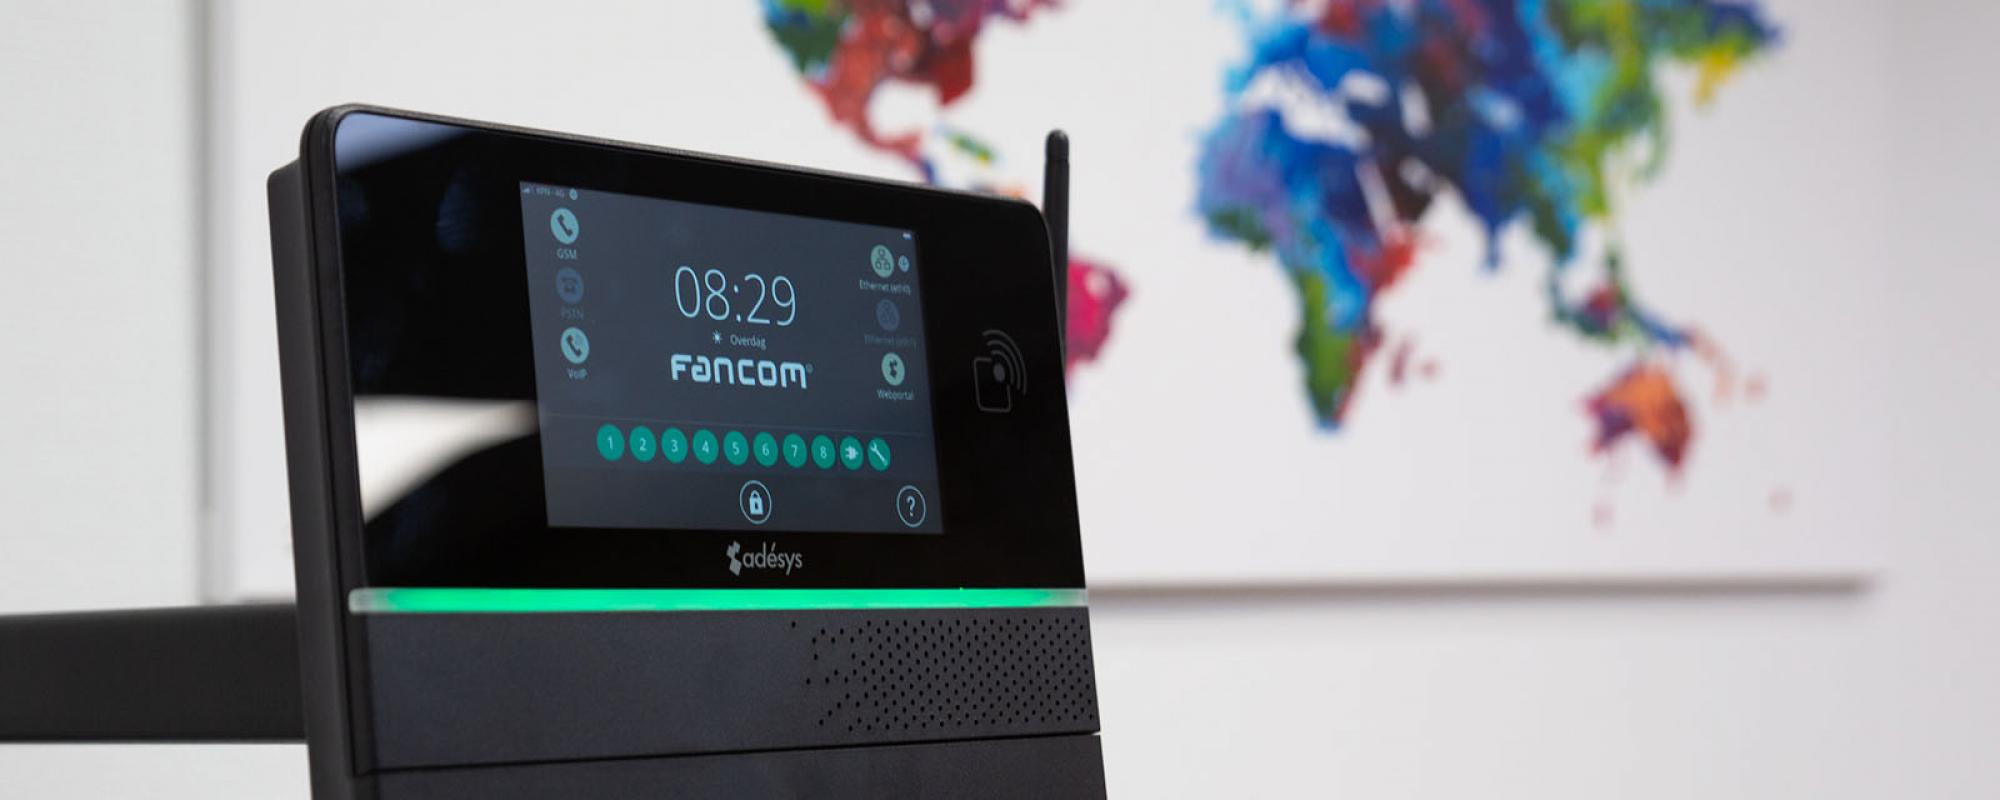 Adésys alarm dialer added to Fancom product portfolio